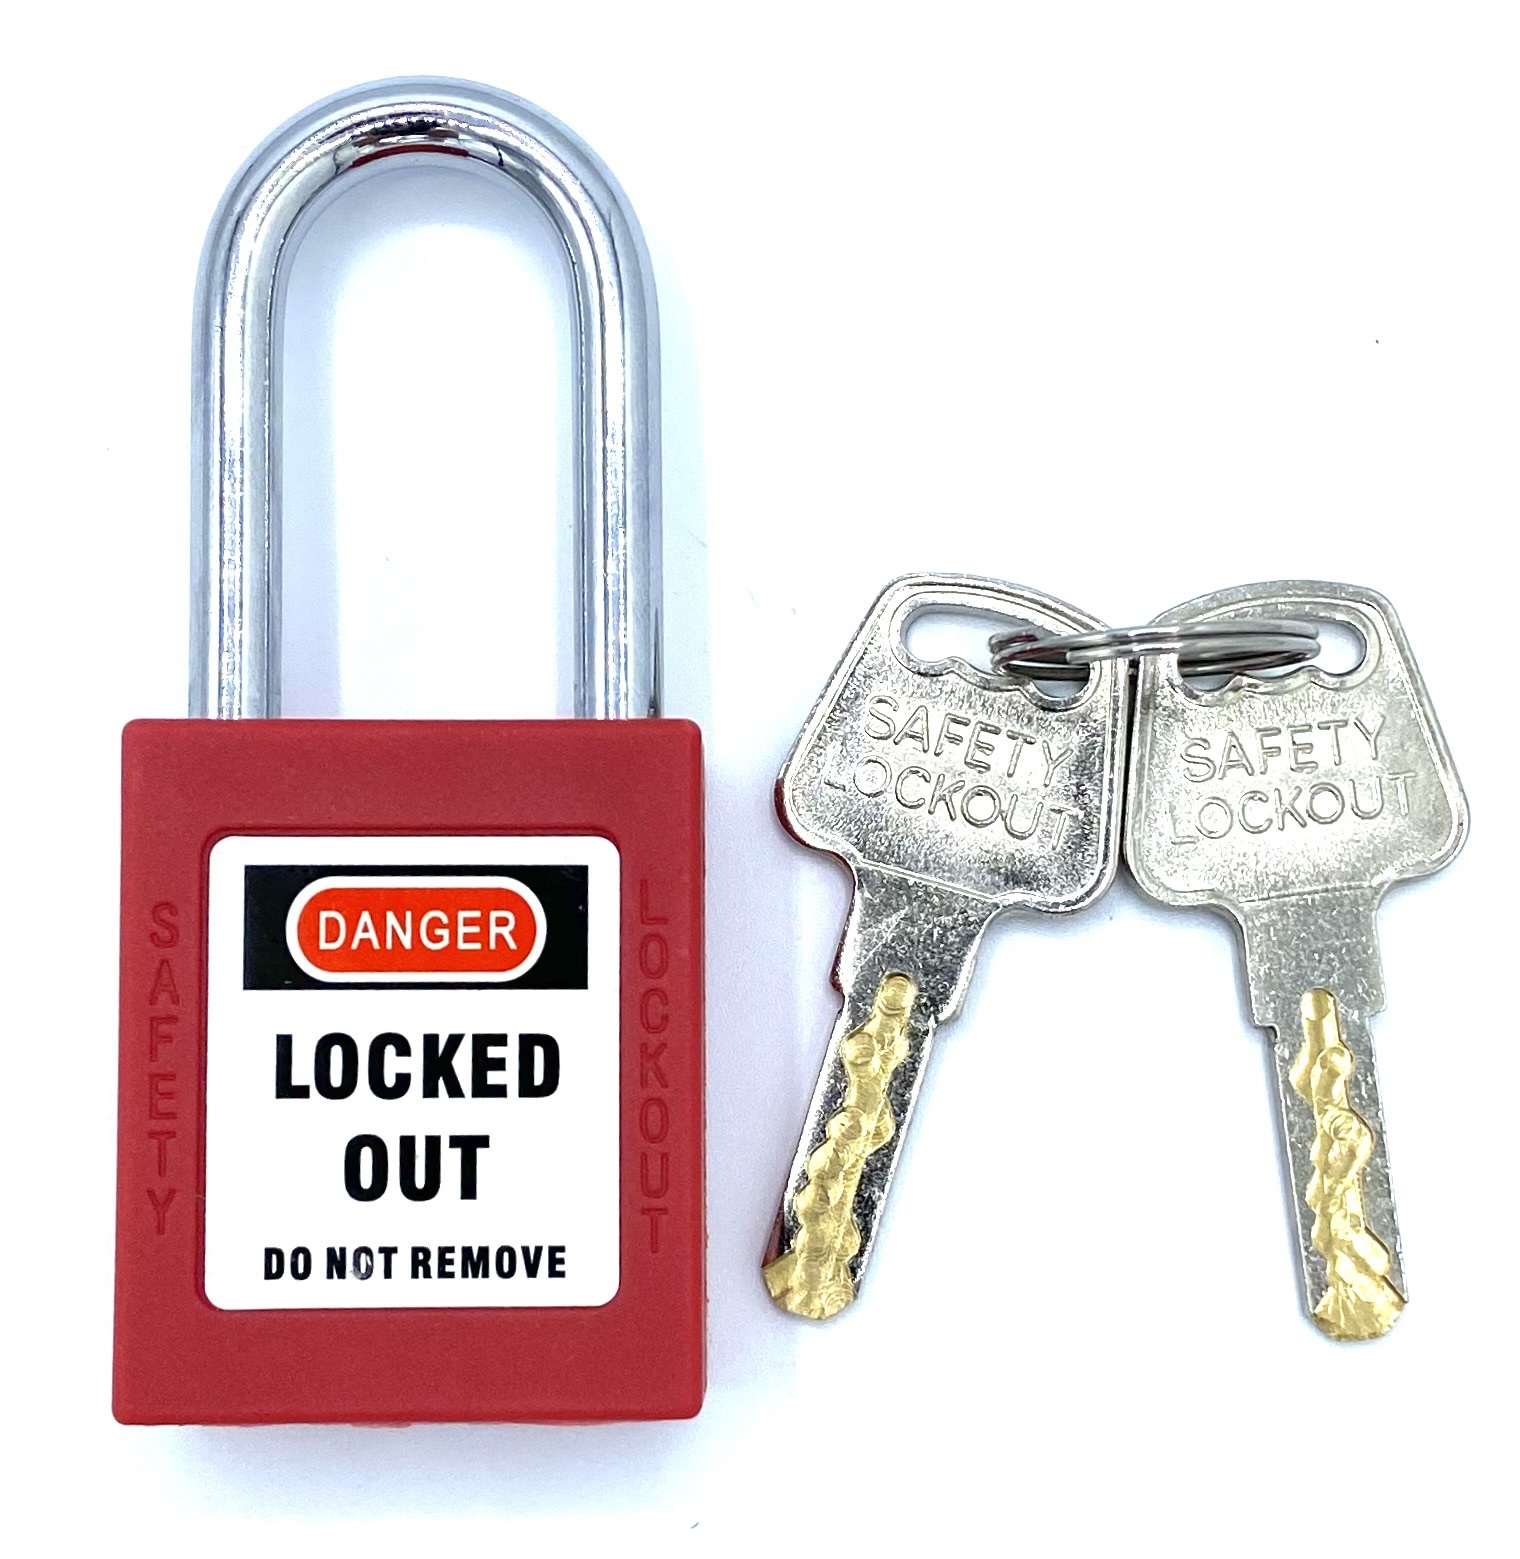 Pad Lock + Key